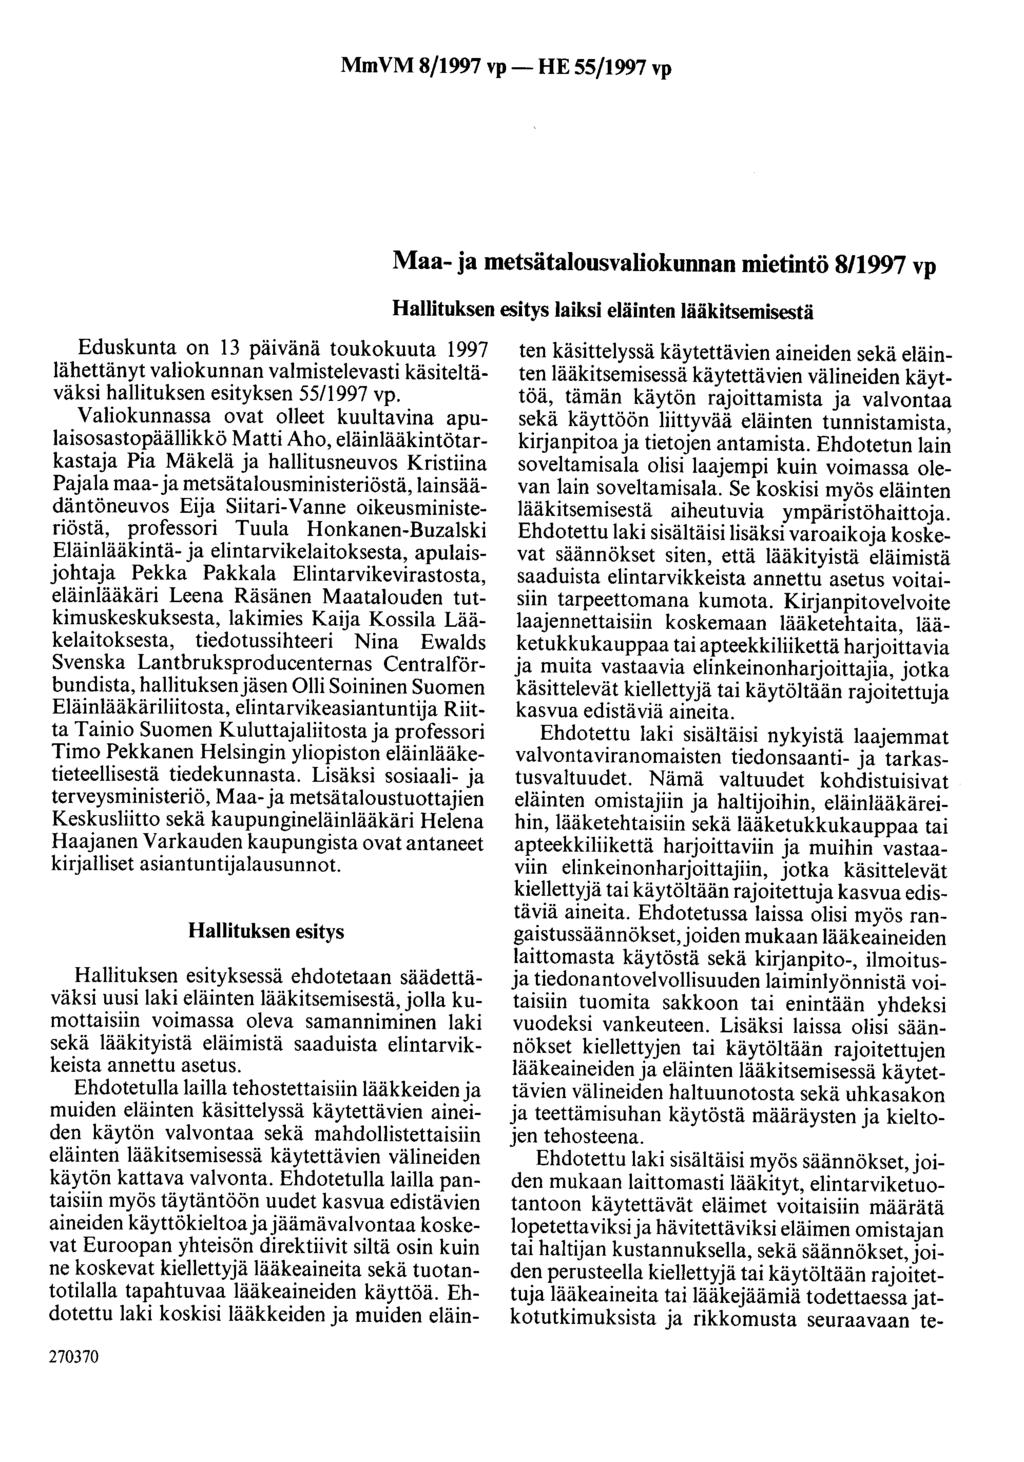 MmVM 8/1997 vp- HE 55/1997 vp Maa- ja metsätalousvaliokunnan mietintö 8/1997 vp Hallituksen esitys laiksi eläinten lääkitsemisestä Eduskunta on 13 päivänä toukokuuta 1997 lähettänyt valiokunnan